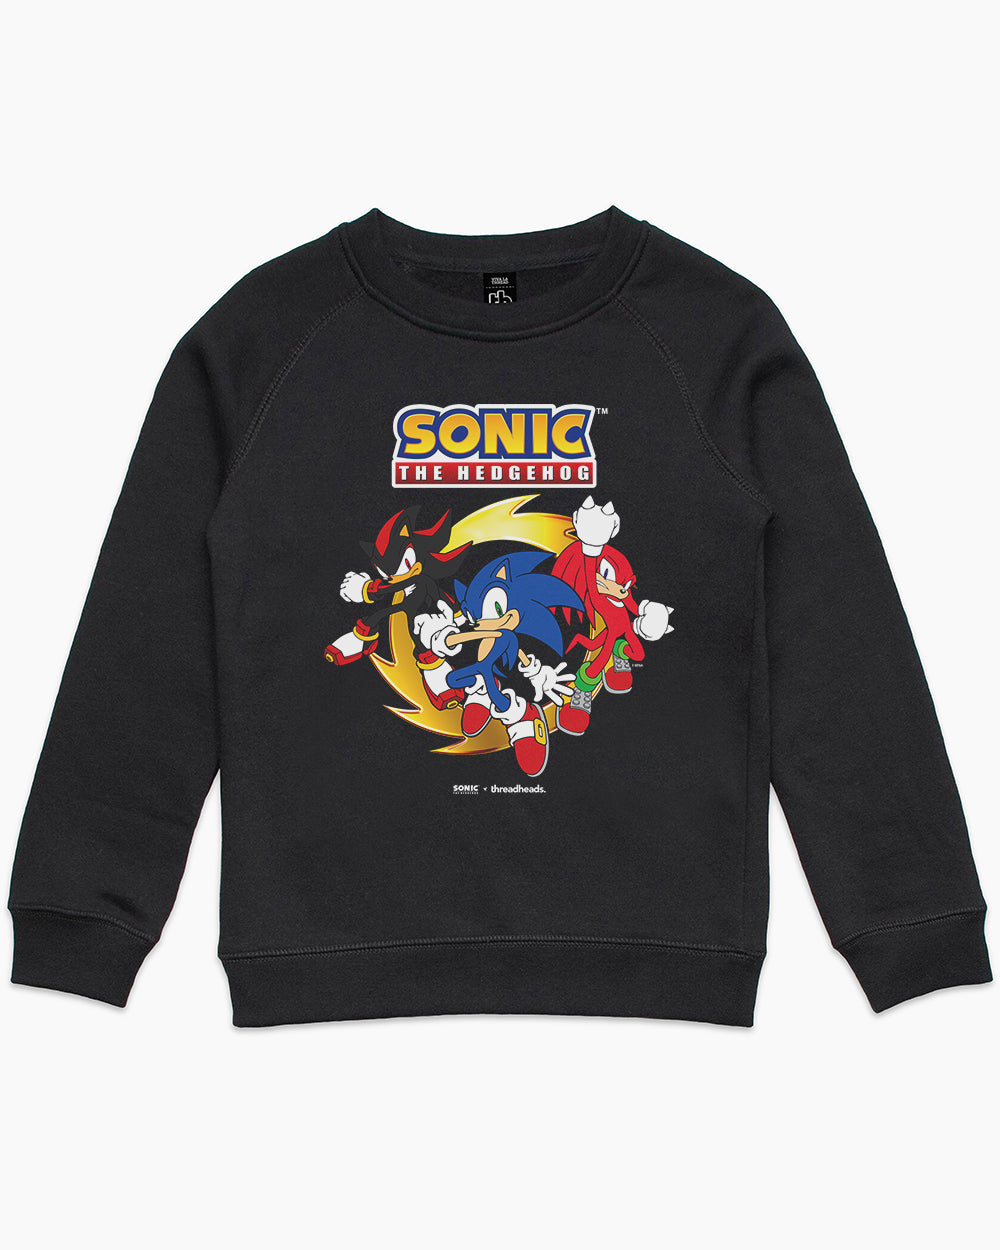 Sonic Has a Posse Kids Sweater Australia Online #colour_black